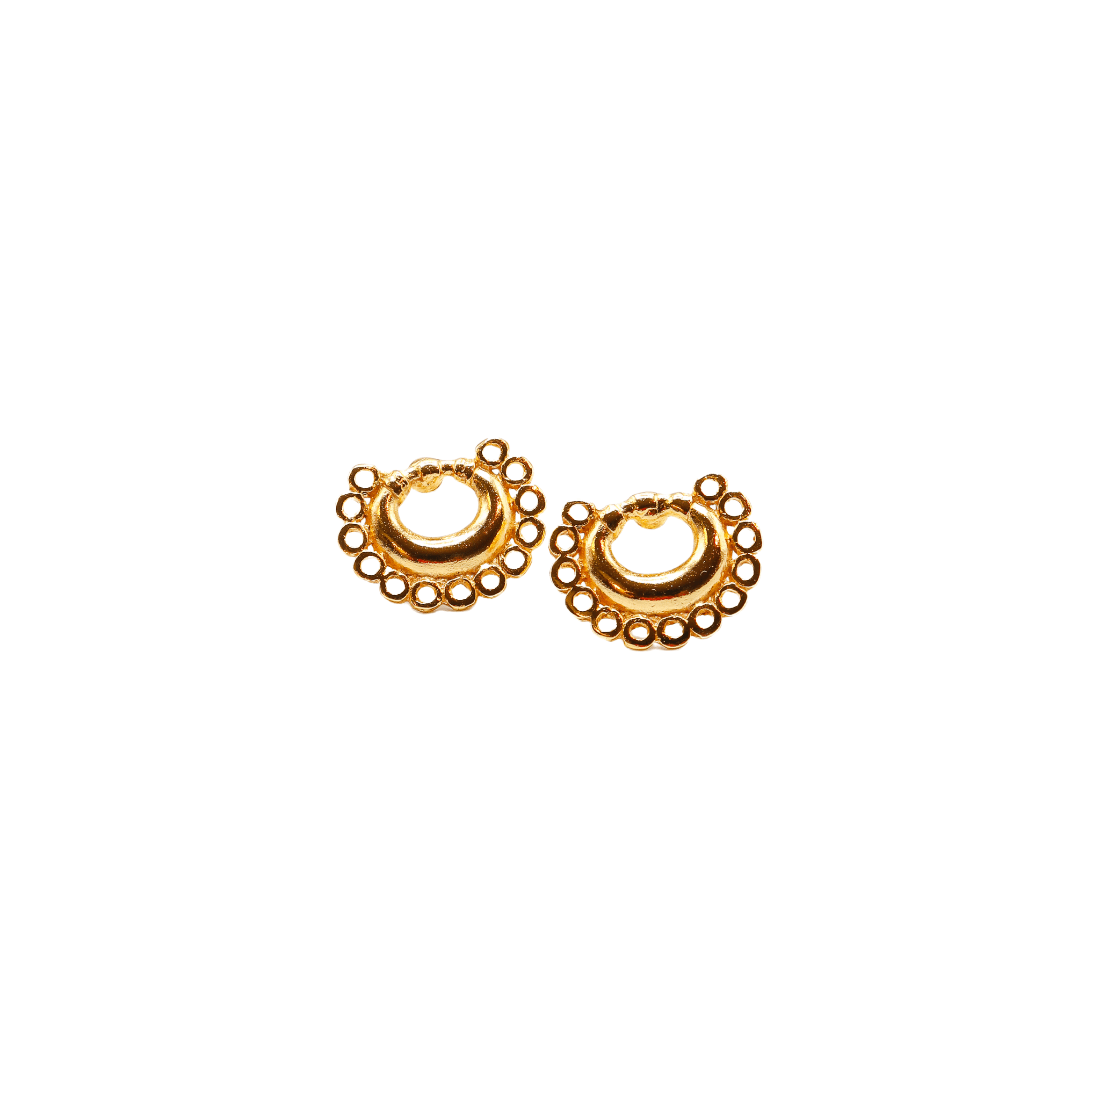 Turbaco Earrings - Origin Colombia